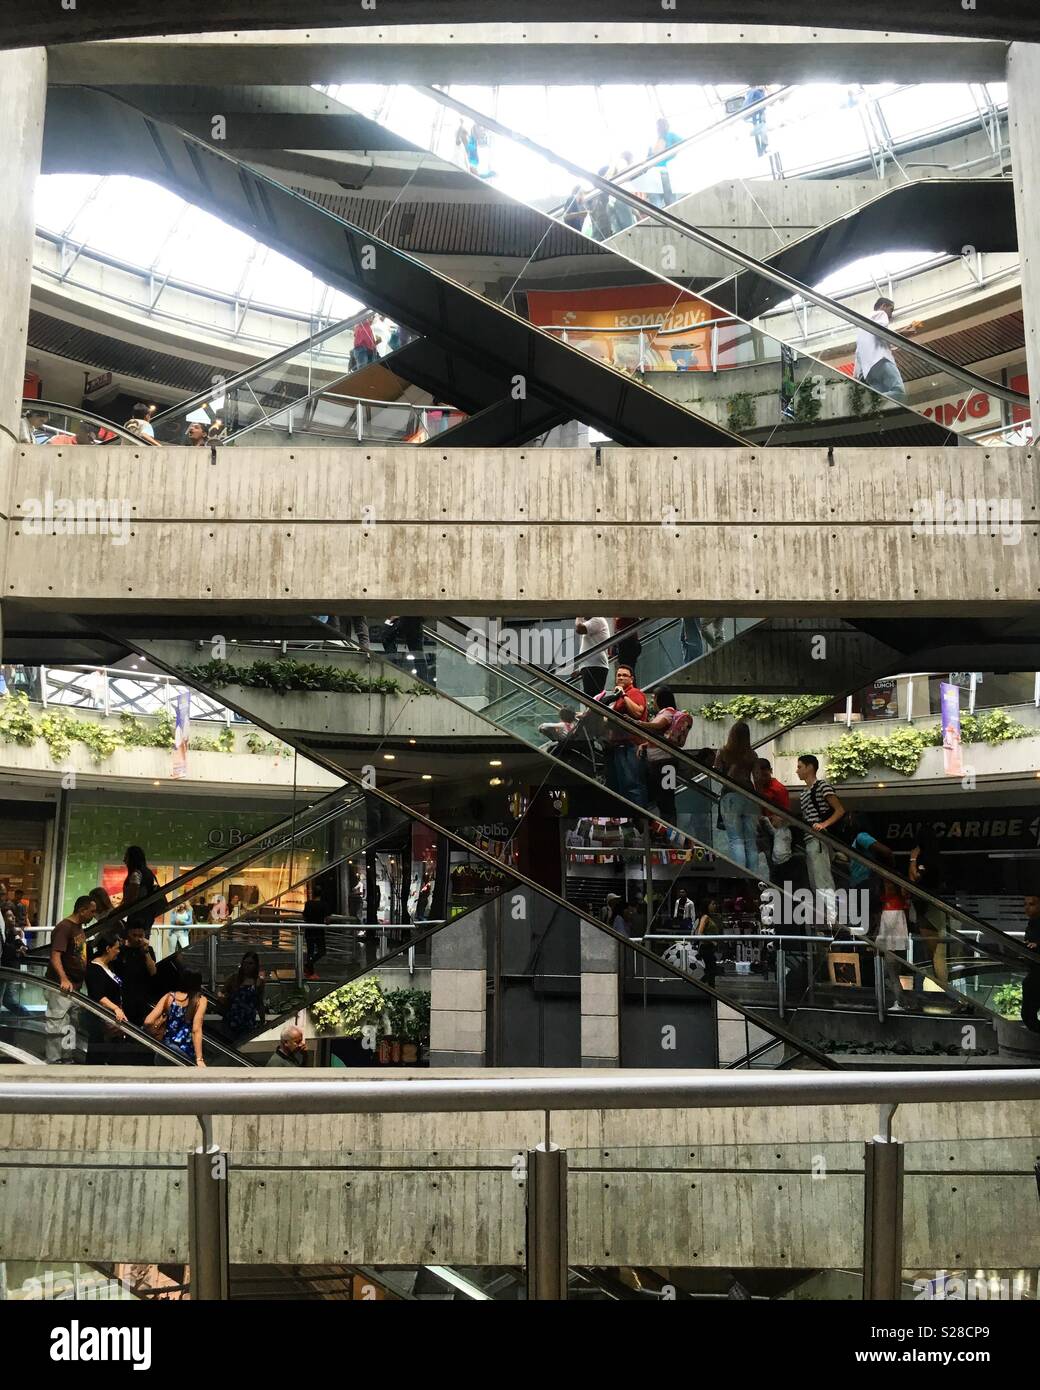 Fotografía estructural de las escaleras mecánicas de un Centro Comercial ubicado en la ciudad de CARACAS, Venezuela. Stock Photo